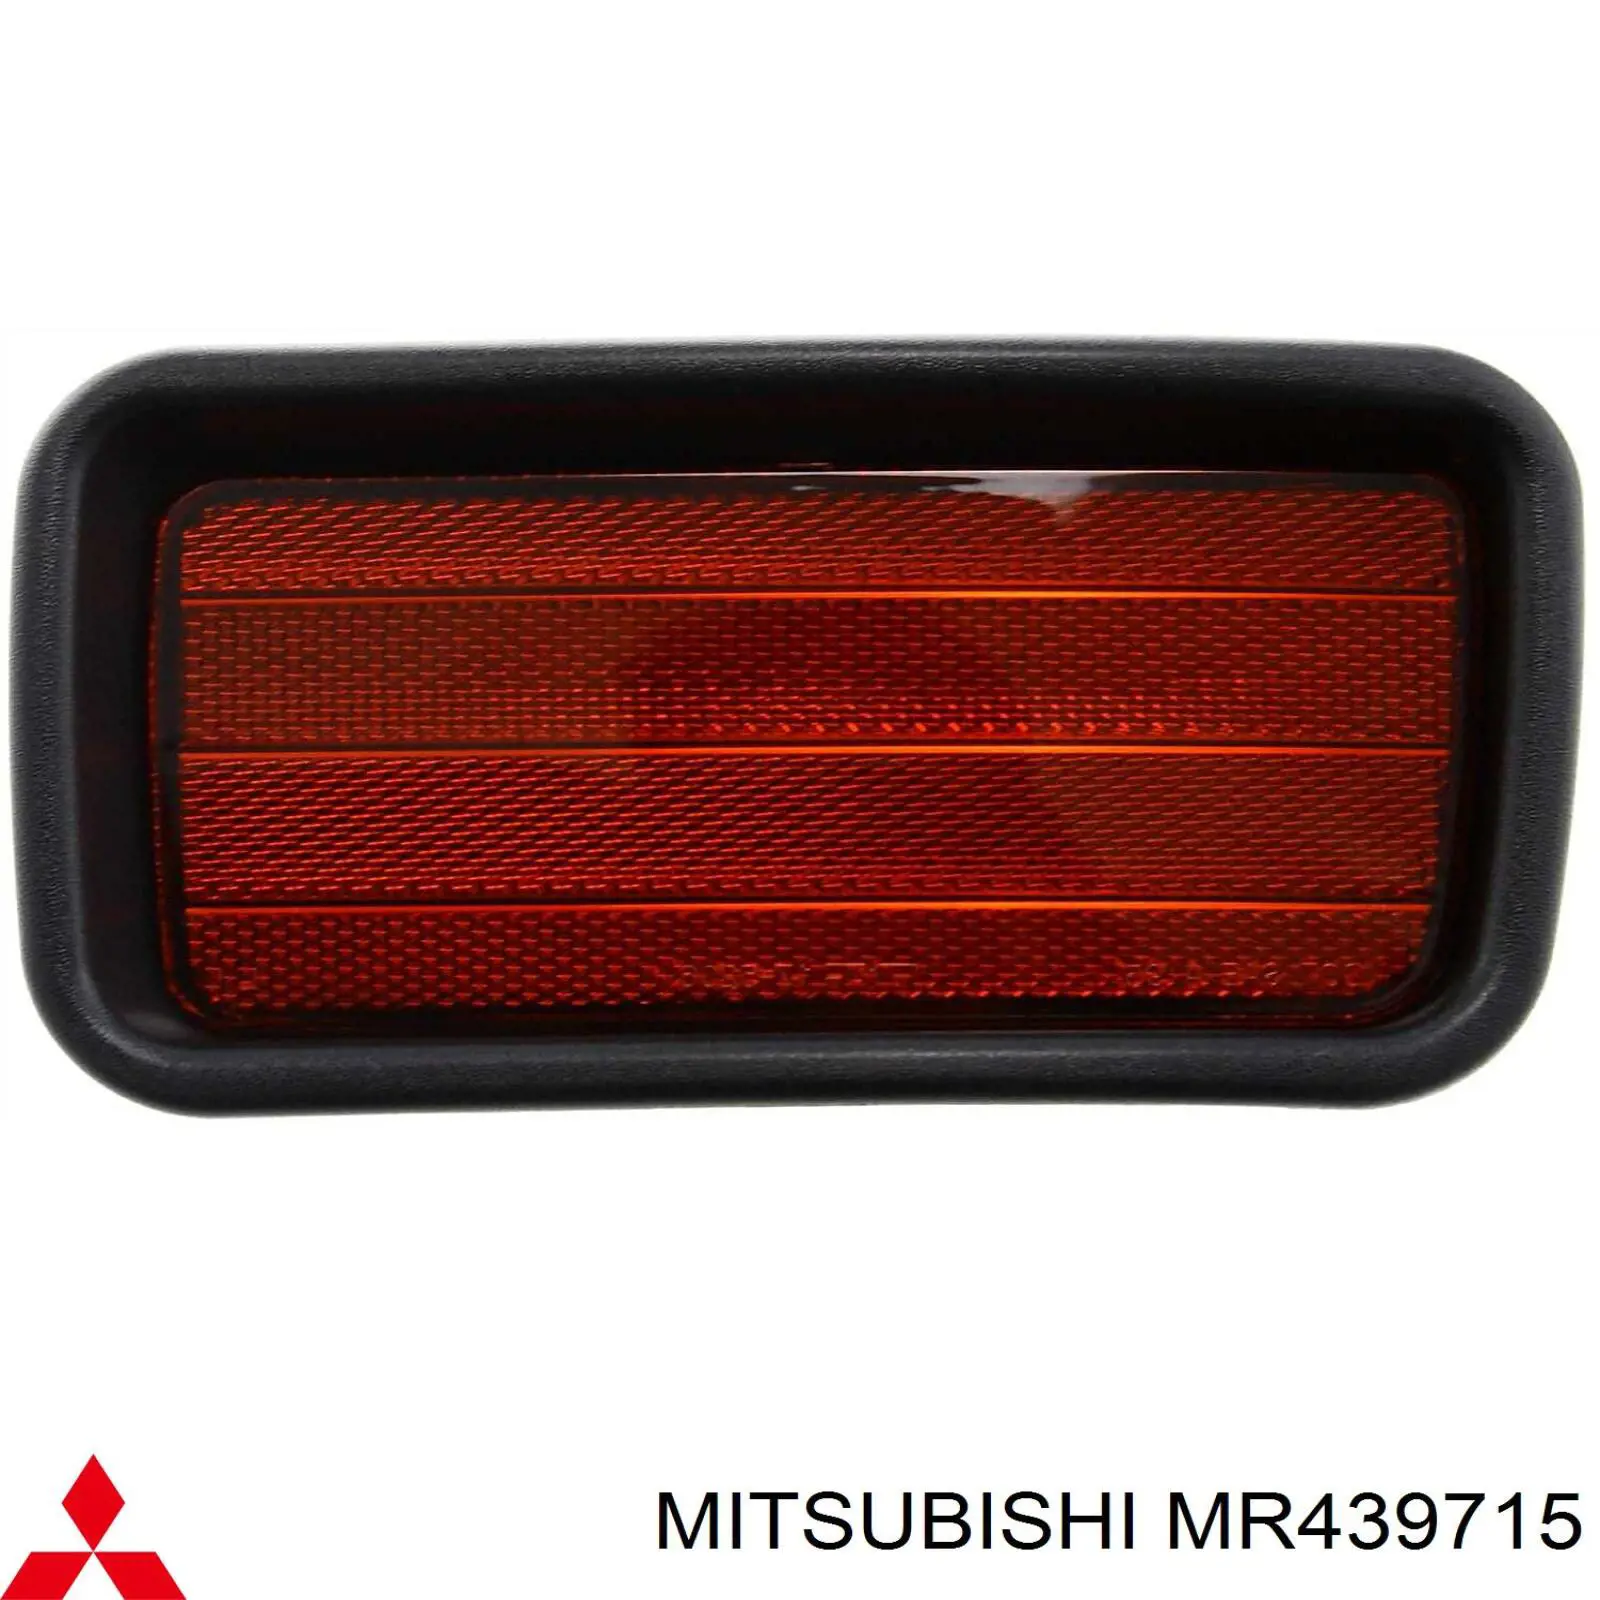 Retrorrefletor (refletor) do pára-choque traseiro esquerdo para Mitsubishi Montero 